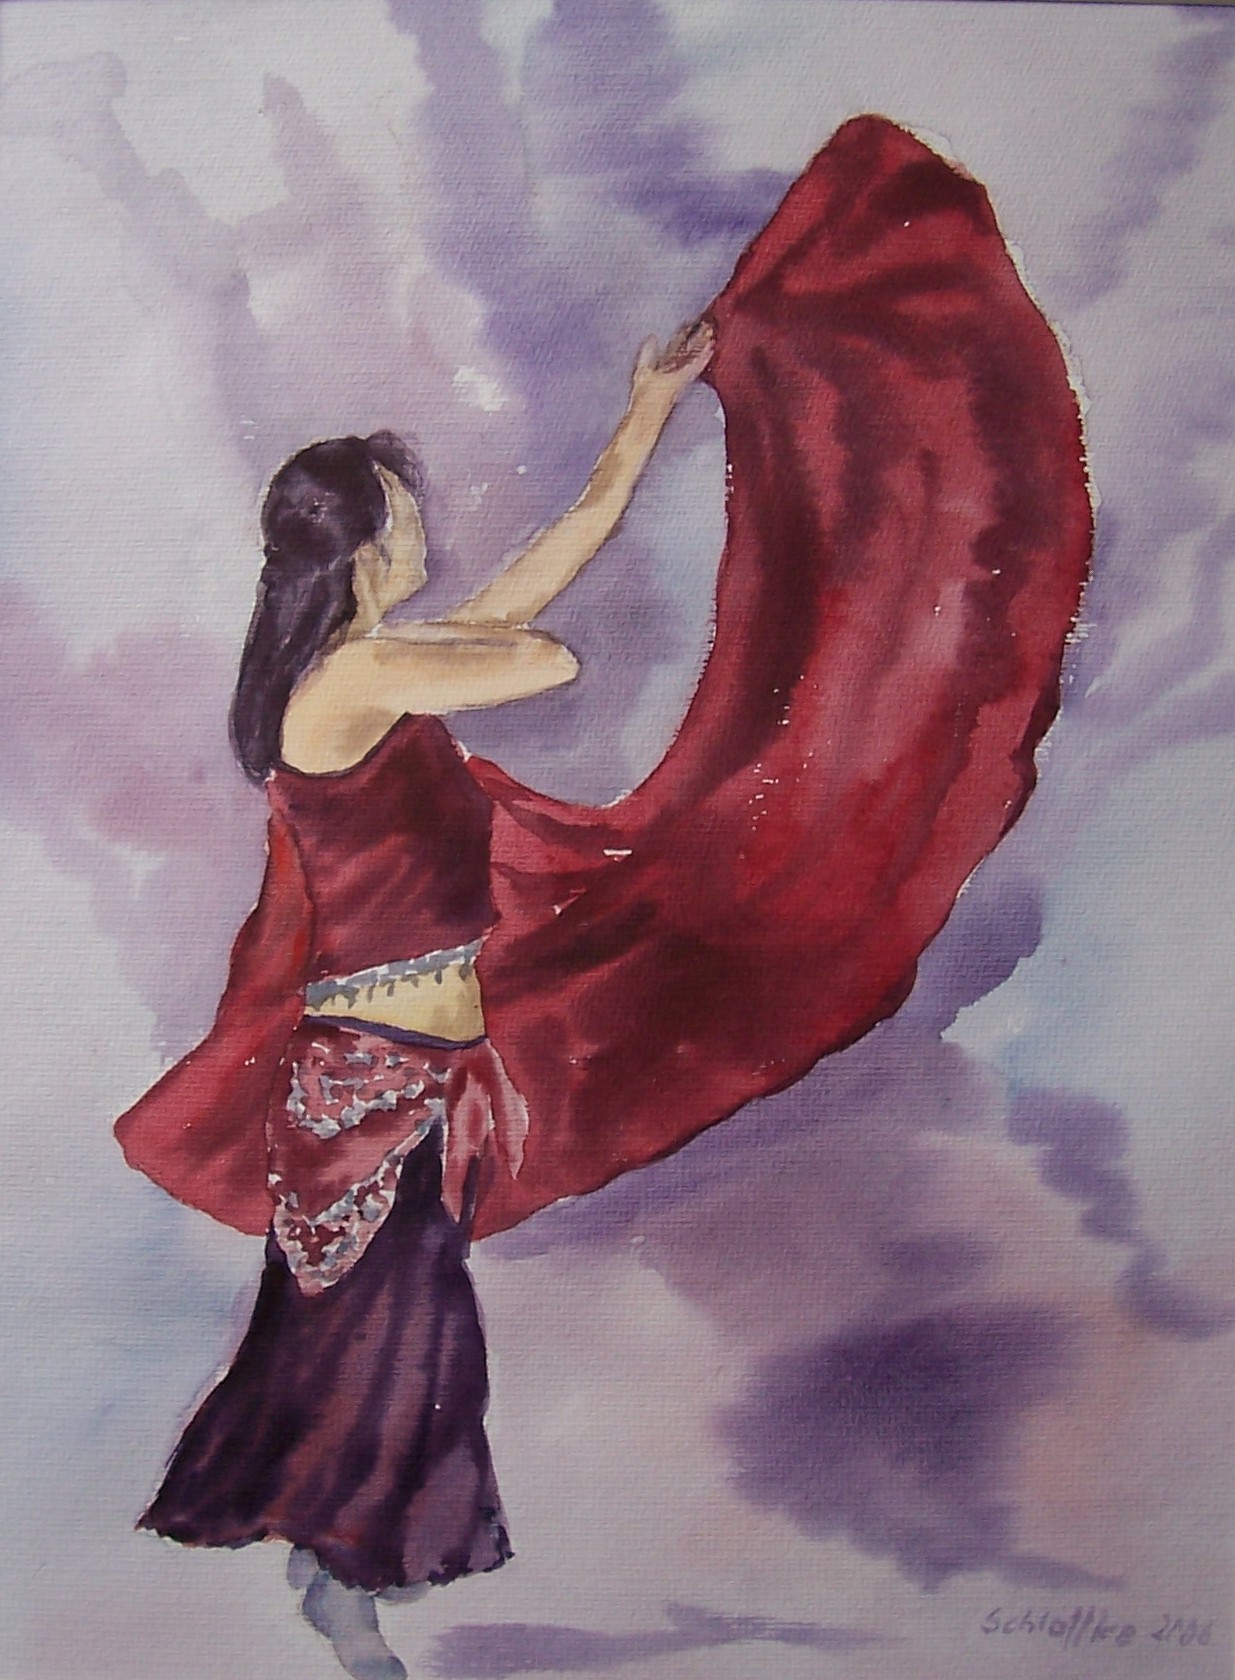 Orientalische Tänzerin mit rotem Schleier in Bewegung seitlich gesehen, gemalt mit Aquarellfarben im Jahr 2006